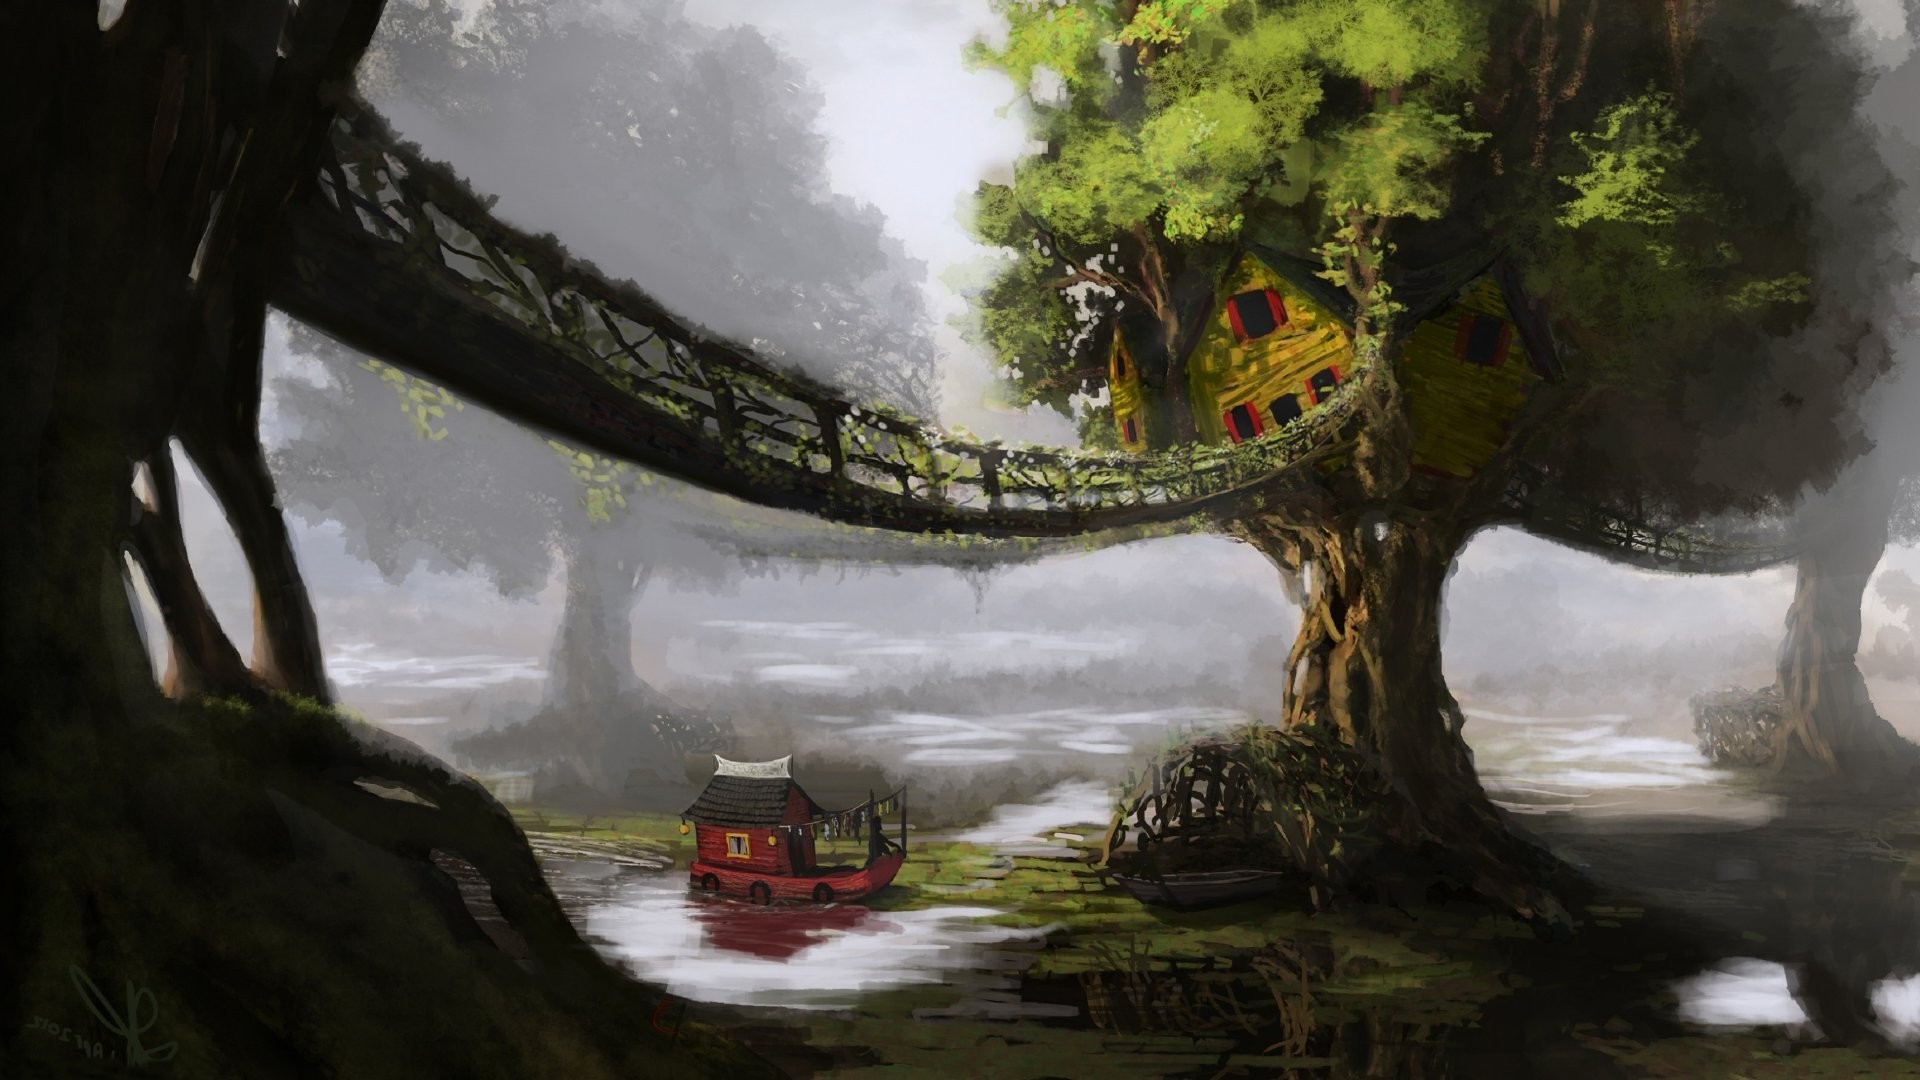 fantasy Art, Artwork, Digital Art, Nature, Trees, Bridge, House, Water, Boat Wallpaper